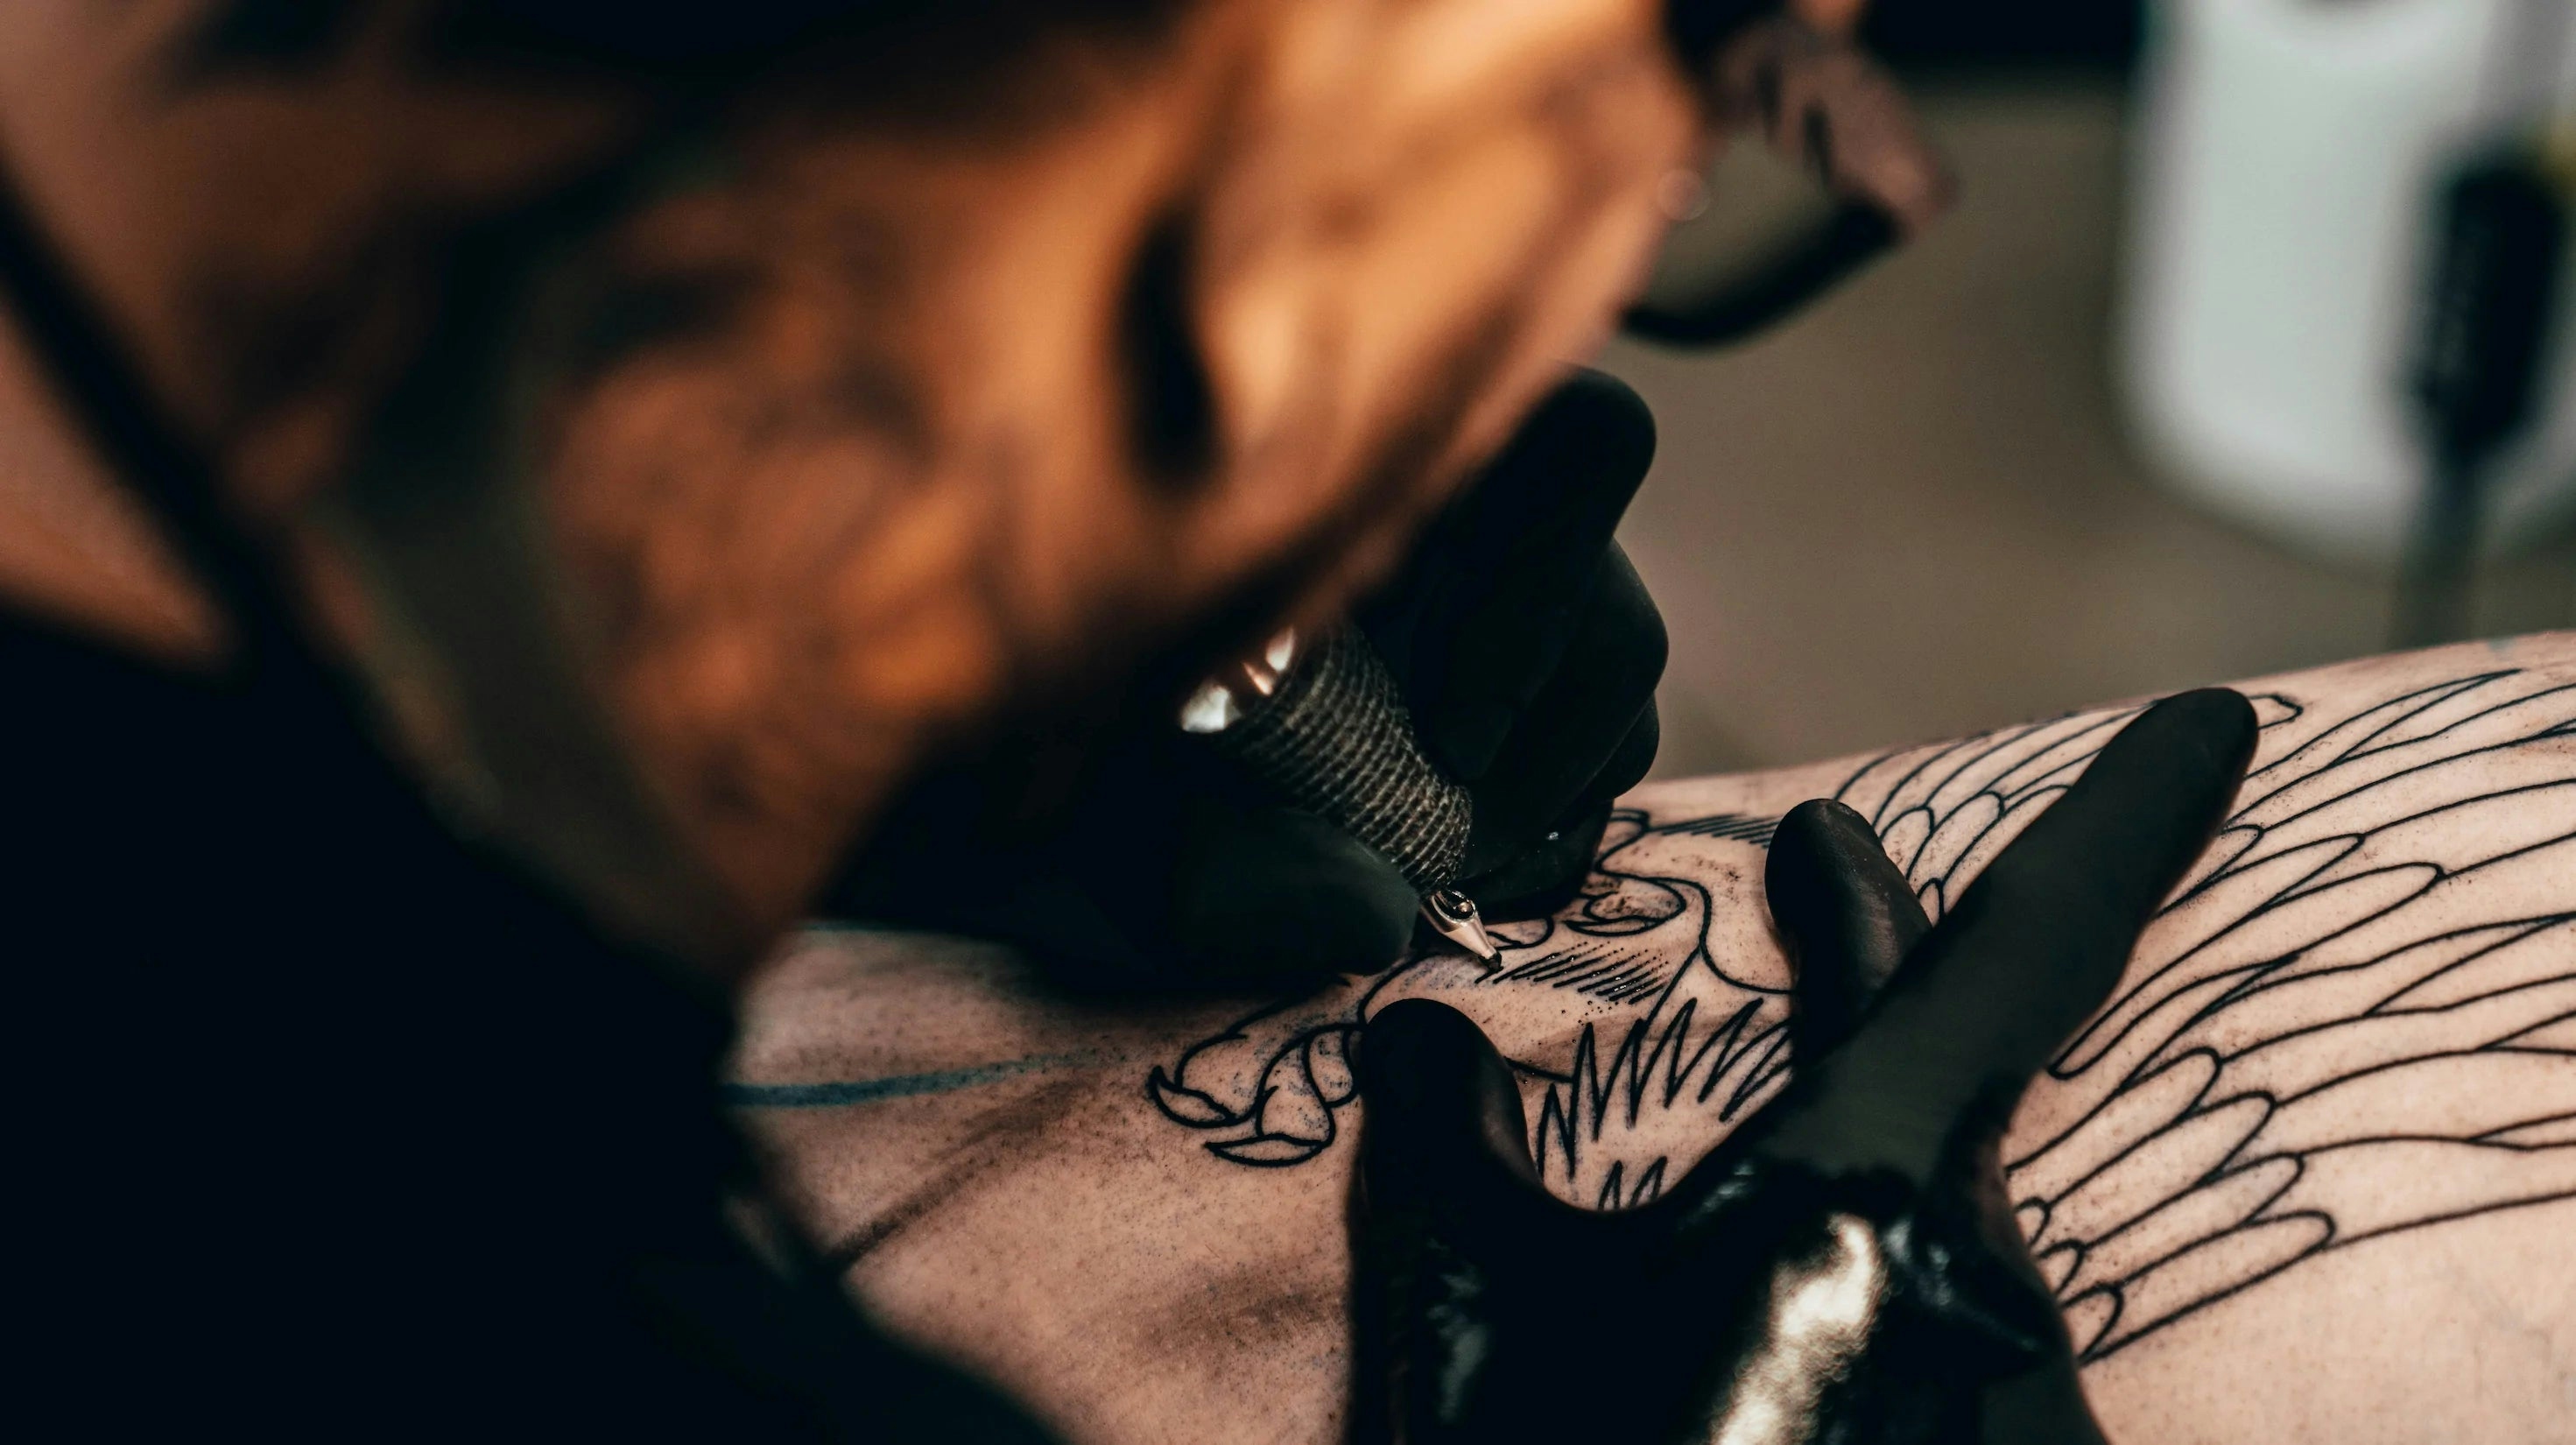 tattoo artist fixing tattoo cracking